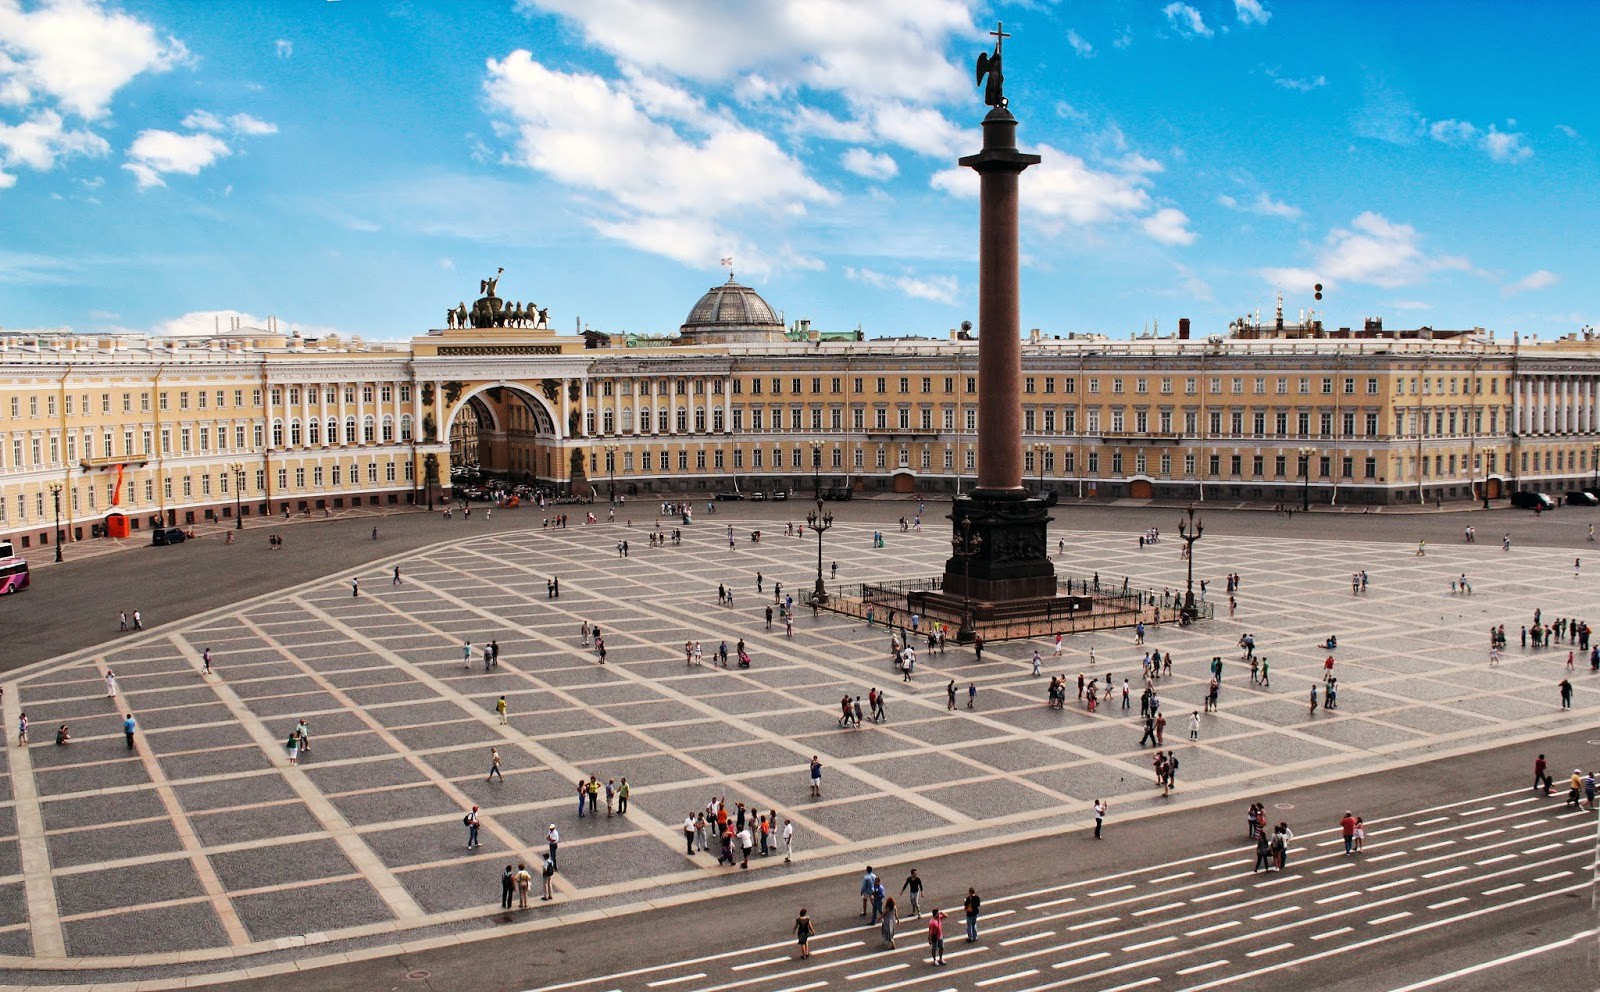 Tours San Petersburgo con guía en español. La plaza del palacio y la columna de Alejandro 1 de Rusia